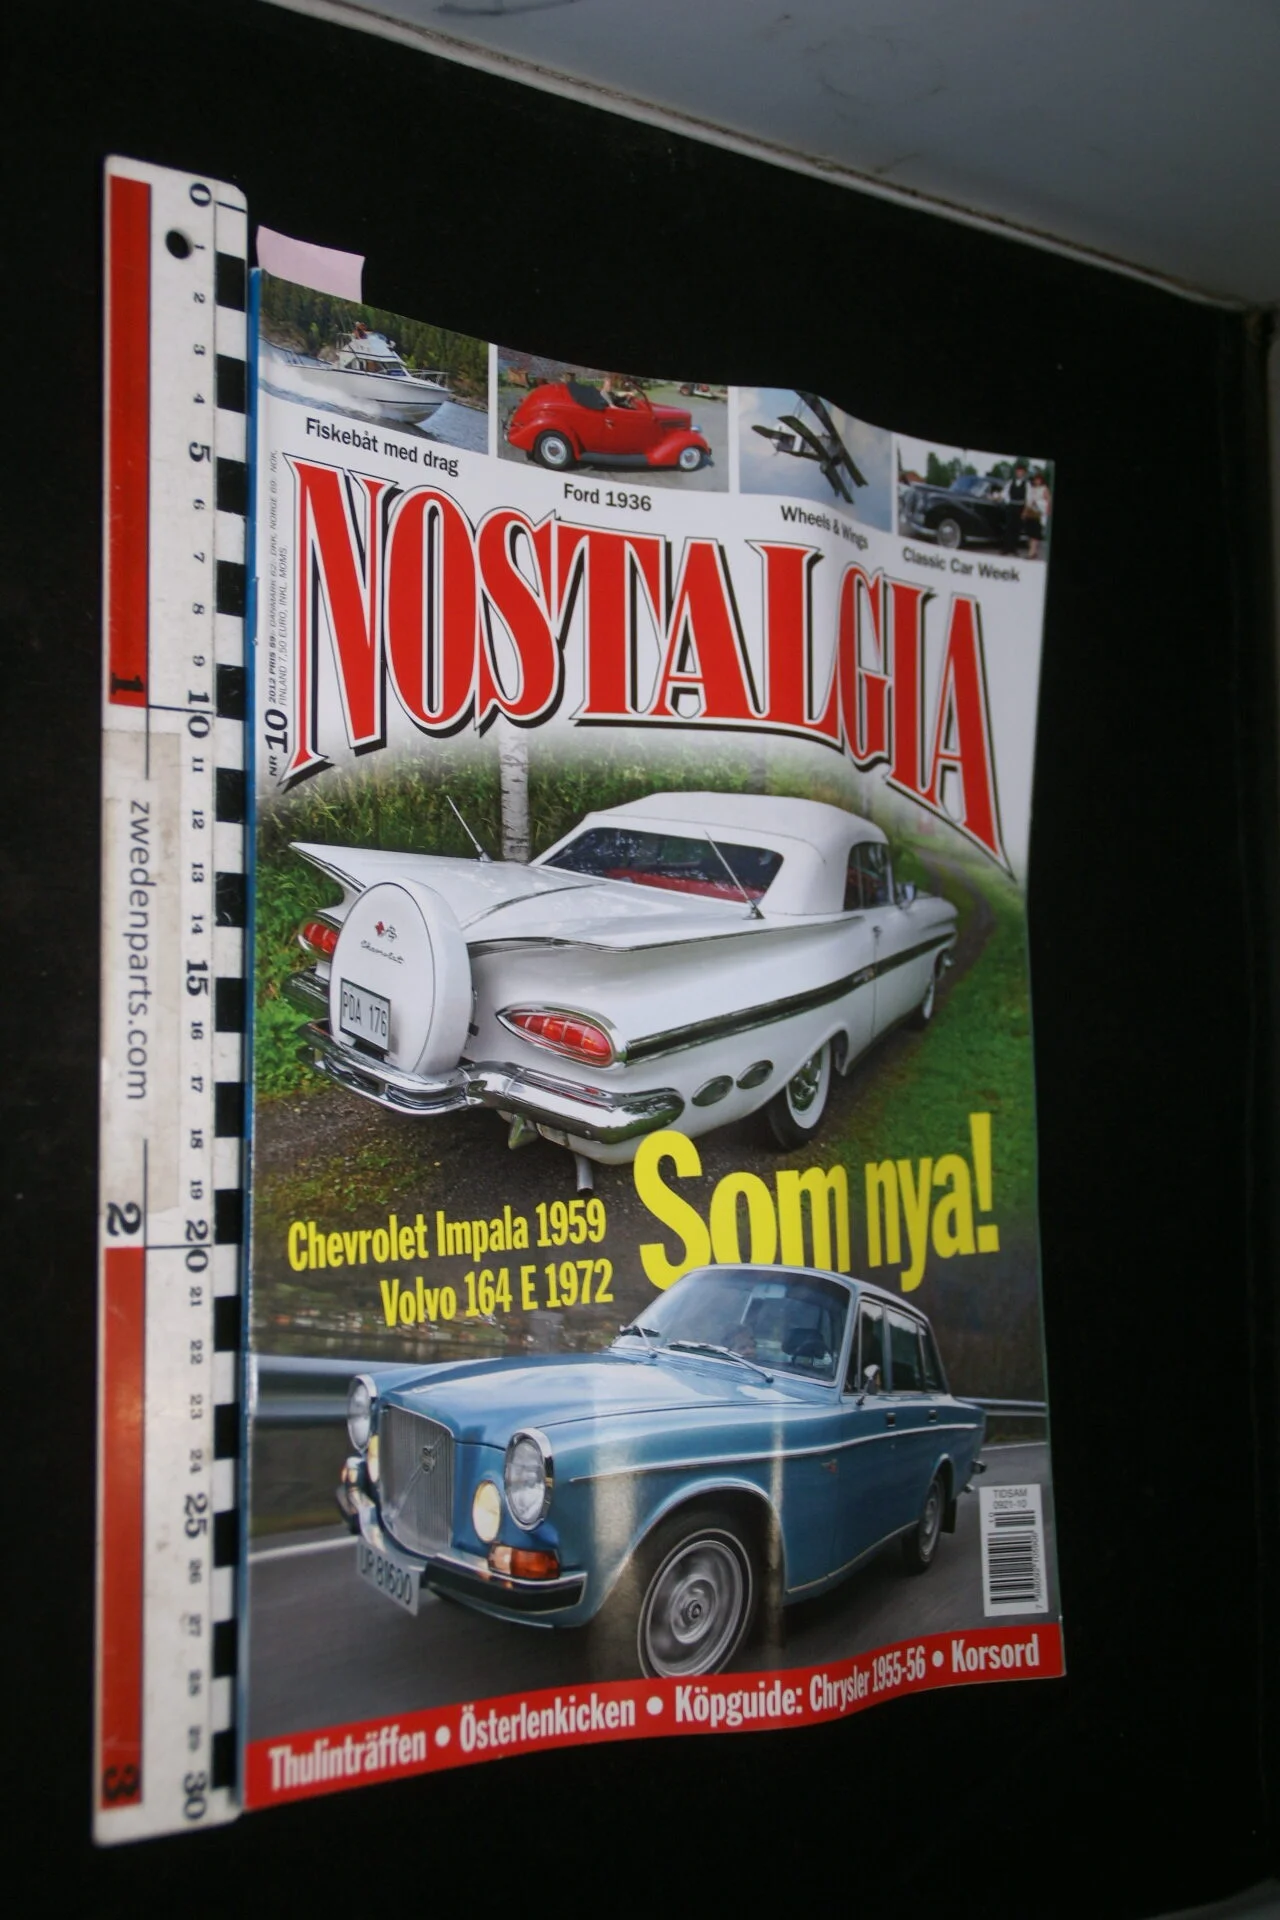 DSC09771 2012 oktober tijdschrift Nostalgia Volvo 164E Chevrolet Impala 1936 Ford-508184c7